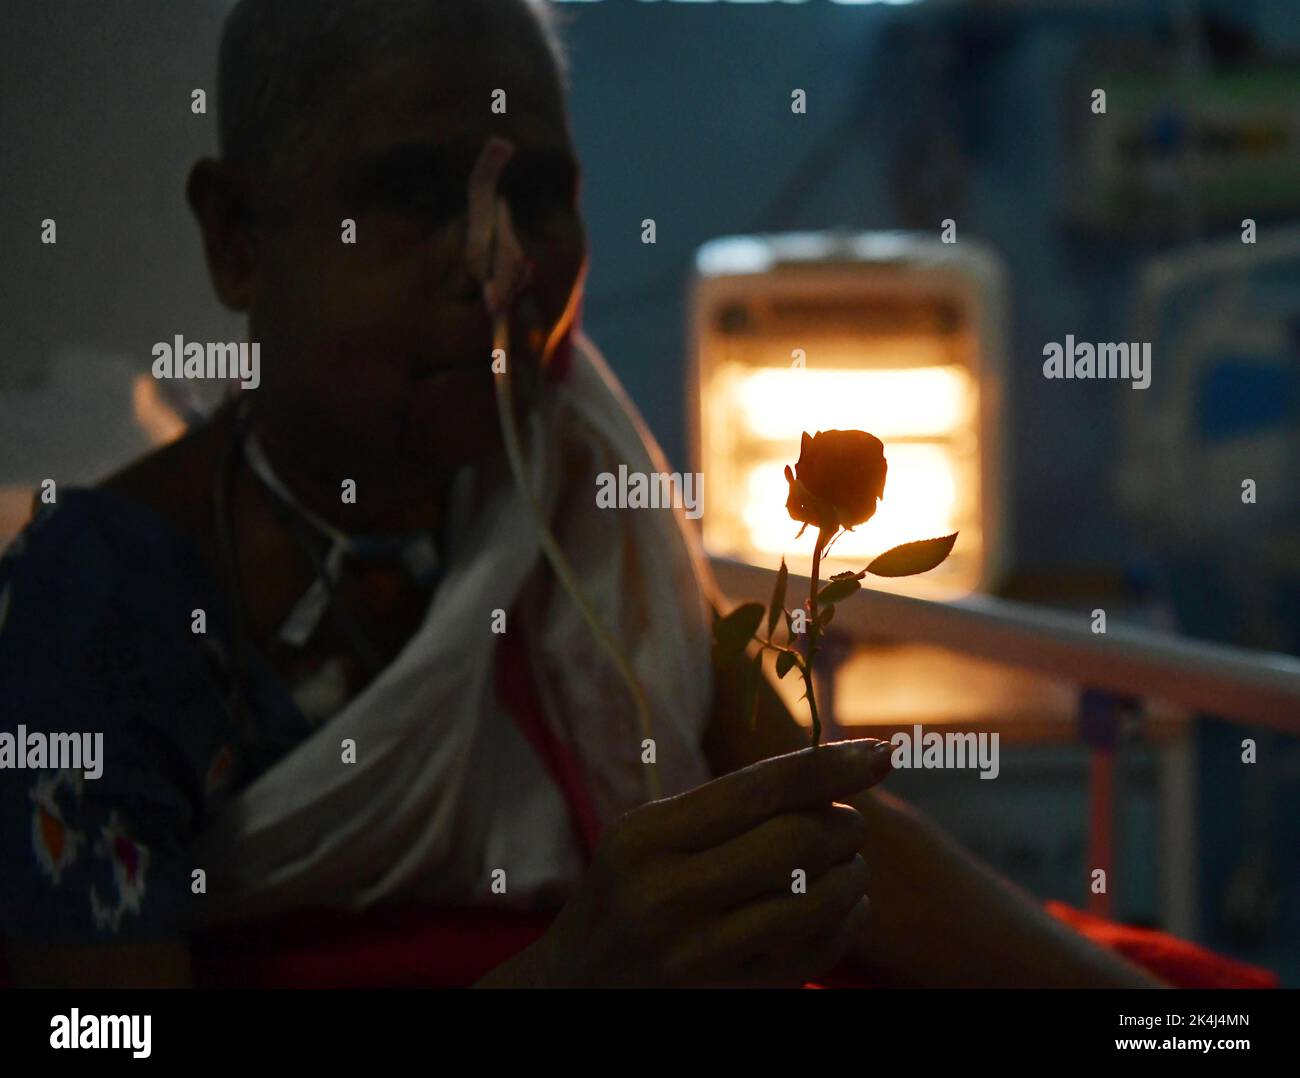 Ein Krebspatient hält eine Rose bereit, die von Ärzten und Krankenschwestern am Welt-Rosentag für das Wohlergehen von Krebspatienten verteilt wird, der jedes Jahr am 22.. September beobachtet wird, um Menschen für Krebs zu sensibilisieren und Patienten eine helfende Hand zu reichen. Atal Bihari Vajpayee Regional Cancer Center in Agartala. Tripura, Indien. Stockfoto